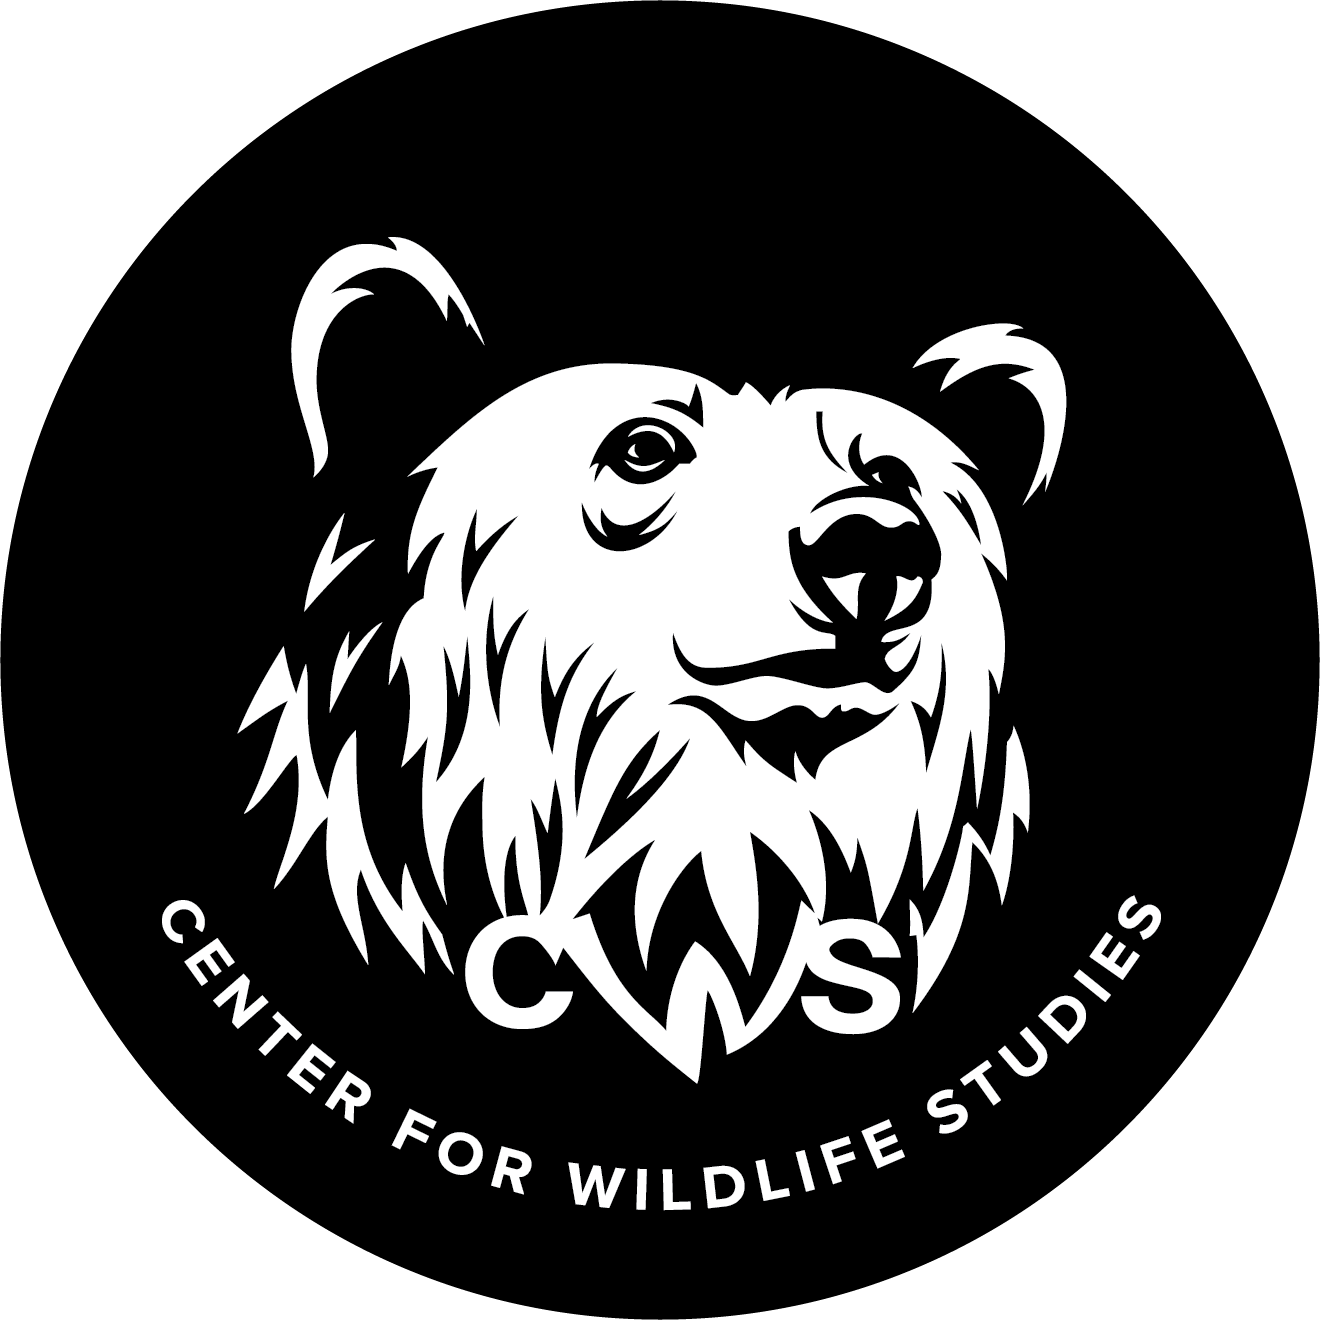 Center for Wildlife Studies